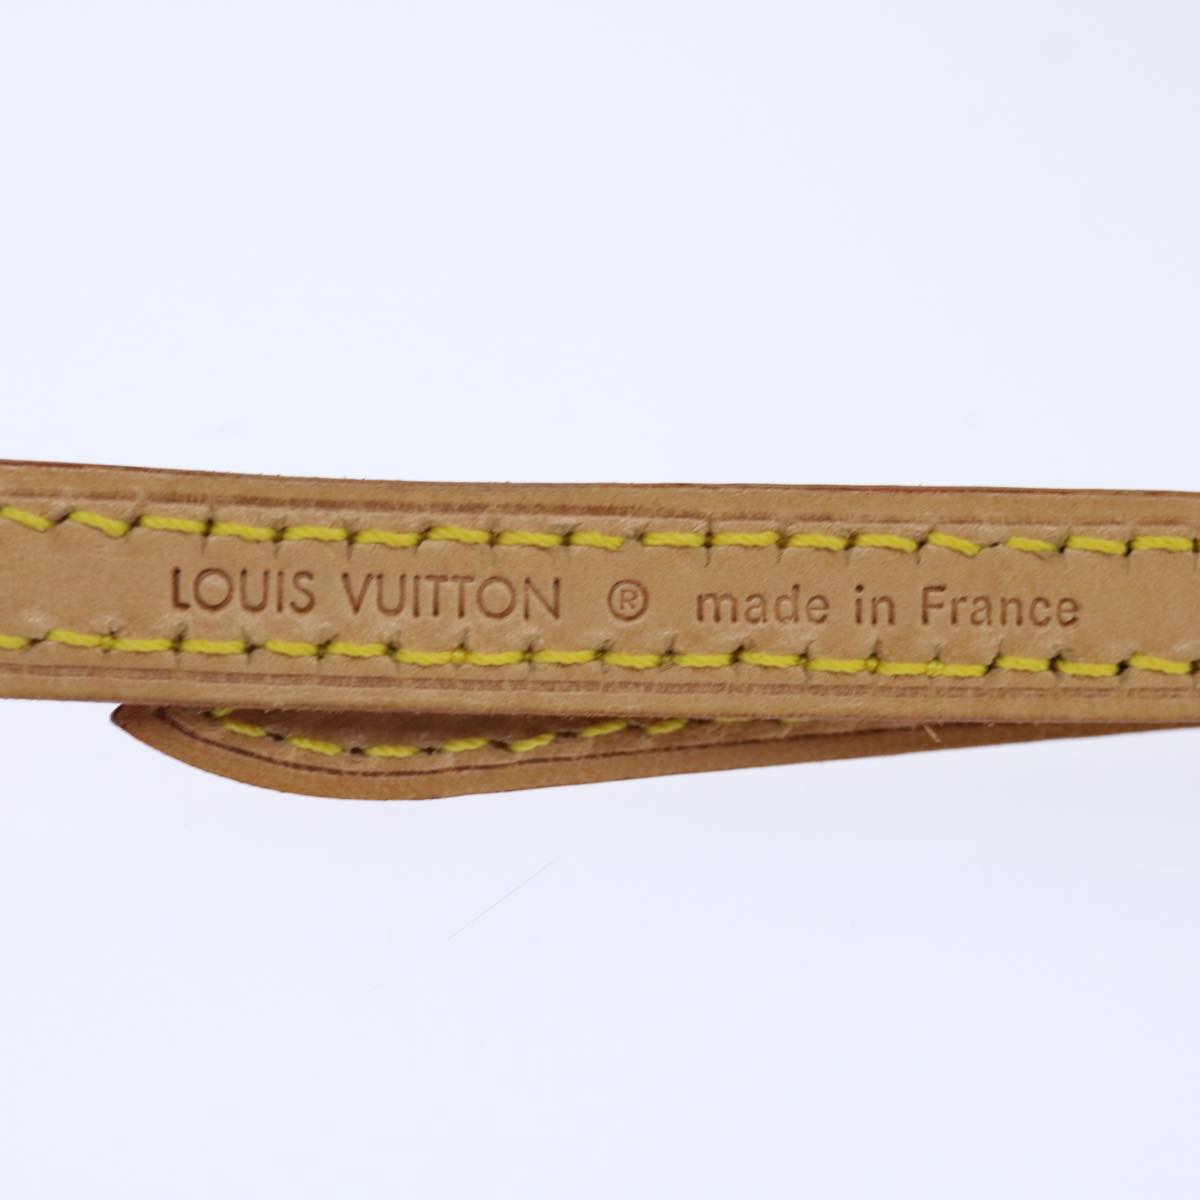 LOUIS VUITTON Adjustable Shoulder Strap Leather 40.2""-47.2"" Beige Auth 70856